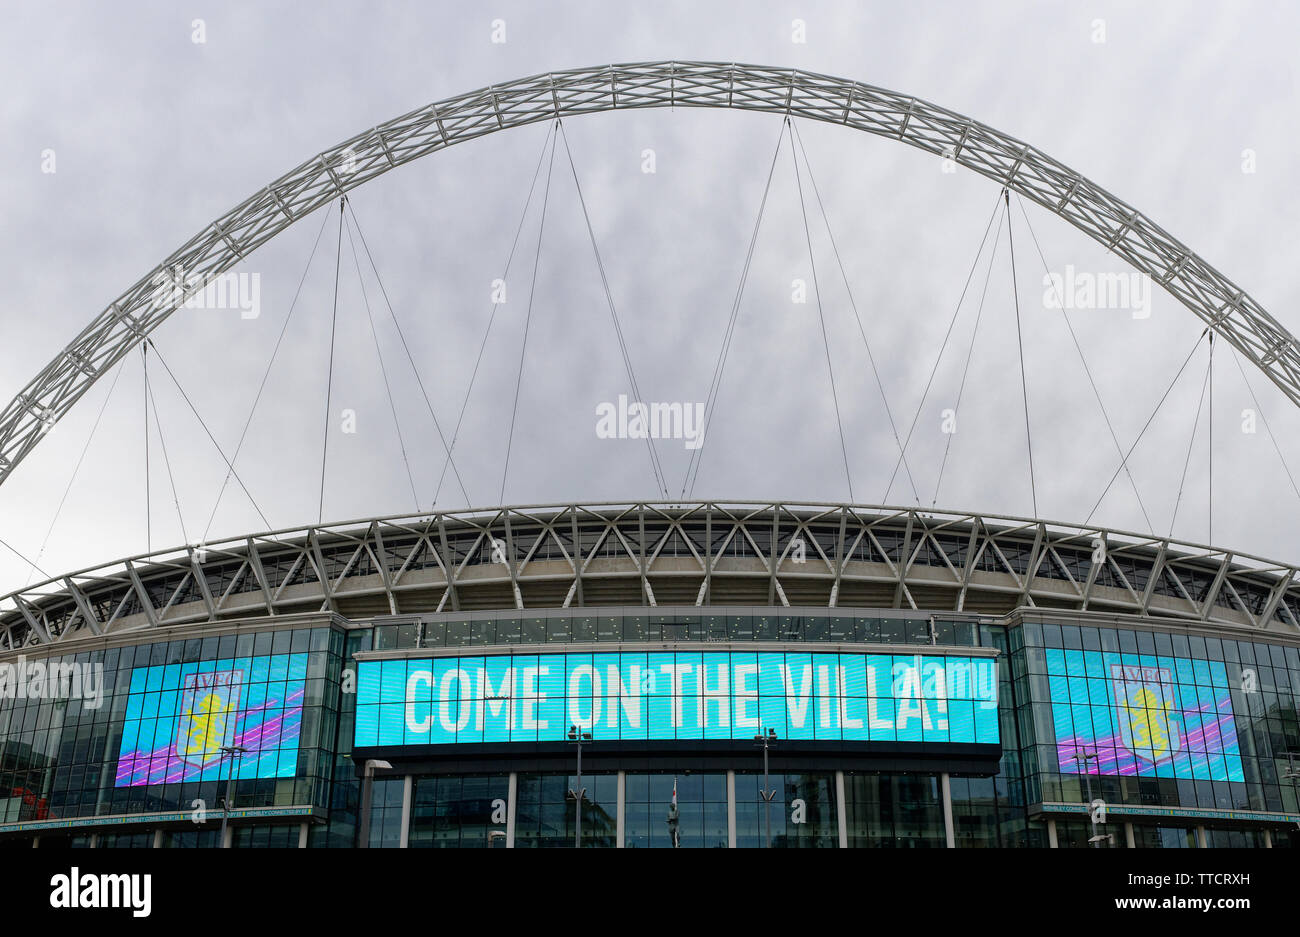 'Villa' sur la publicité pour Aston Villa avant l'EFL Championship play-off finale, le Stade de Wembley, Londres Banque D'Images